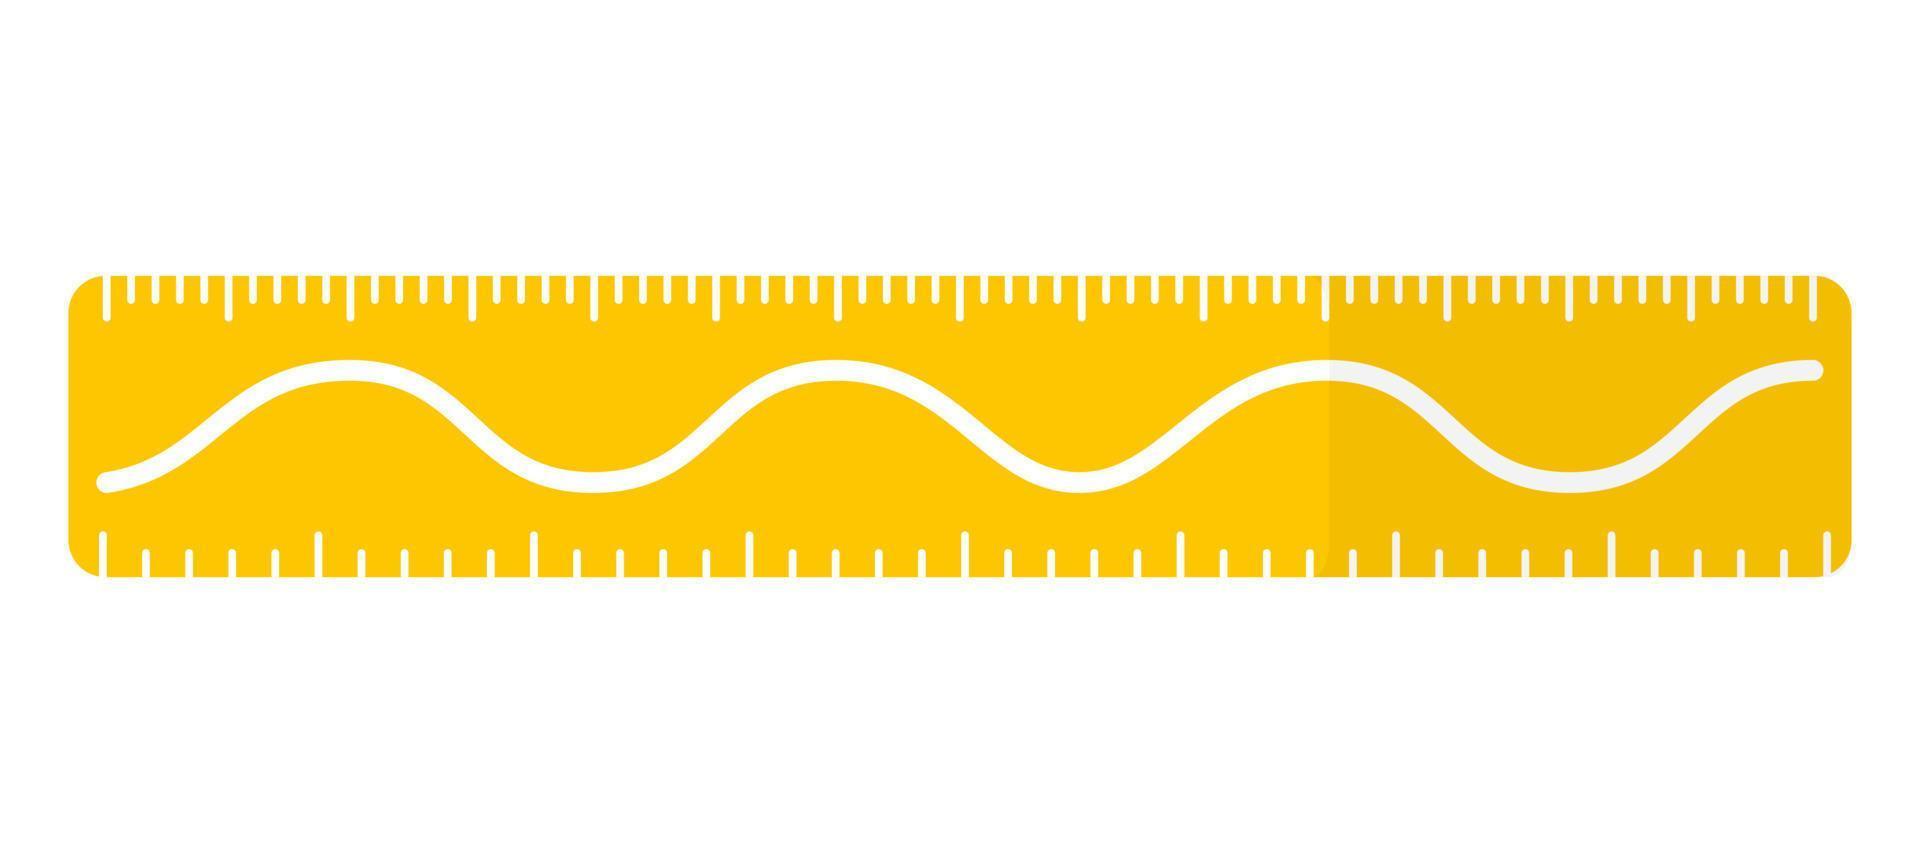 righello rettangolare giallo del fumetto vettoriale con linea ondulata, seno o coseno.